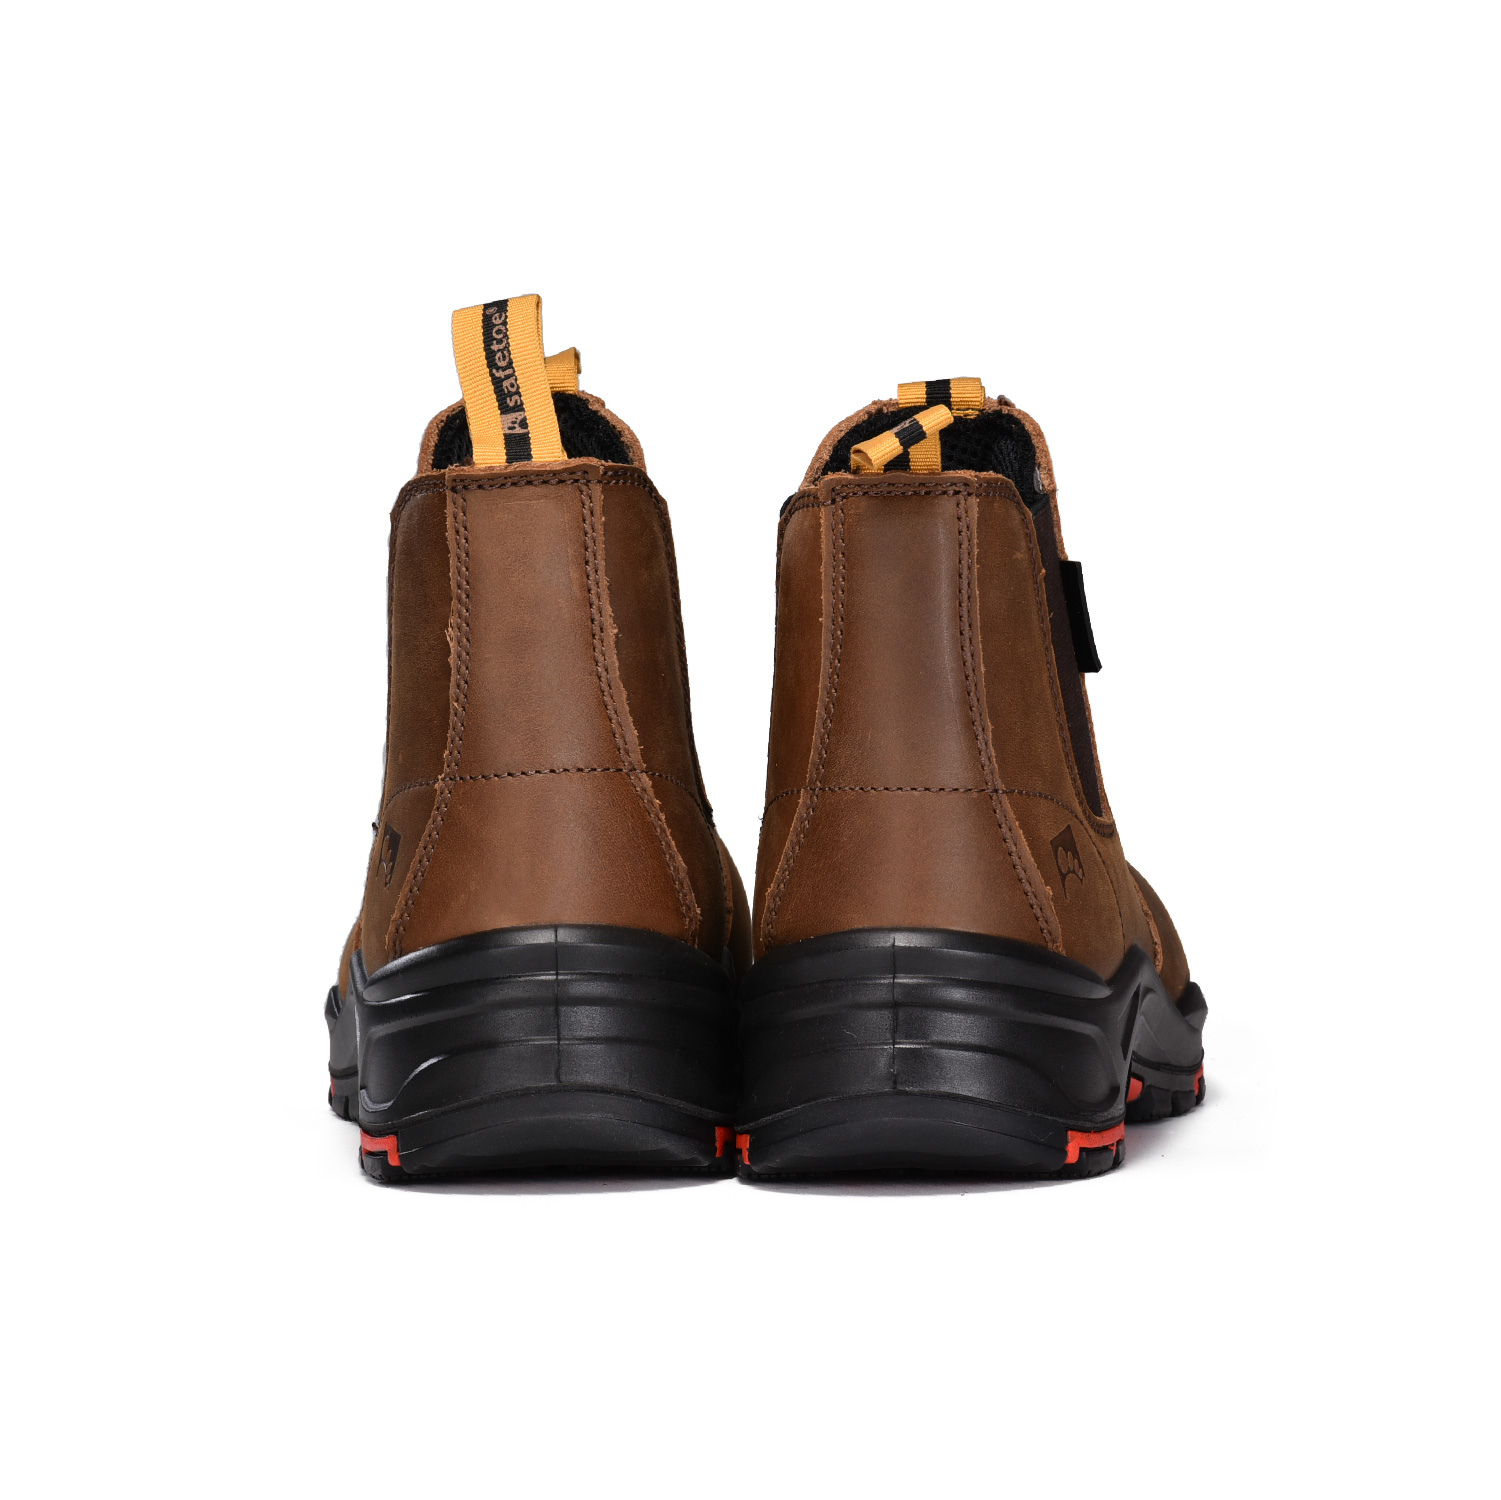 Ready Stock Herren Leder Safety Chelsea Composite Toe Slip On Ankle Dealer Stiefel M-8025NBO